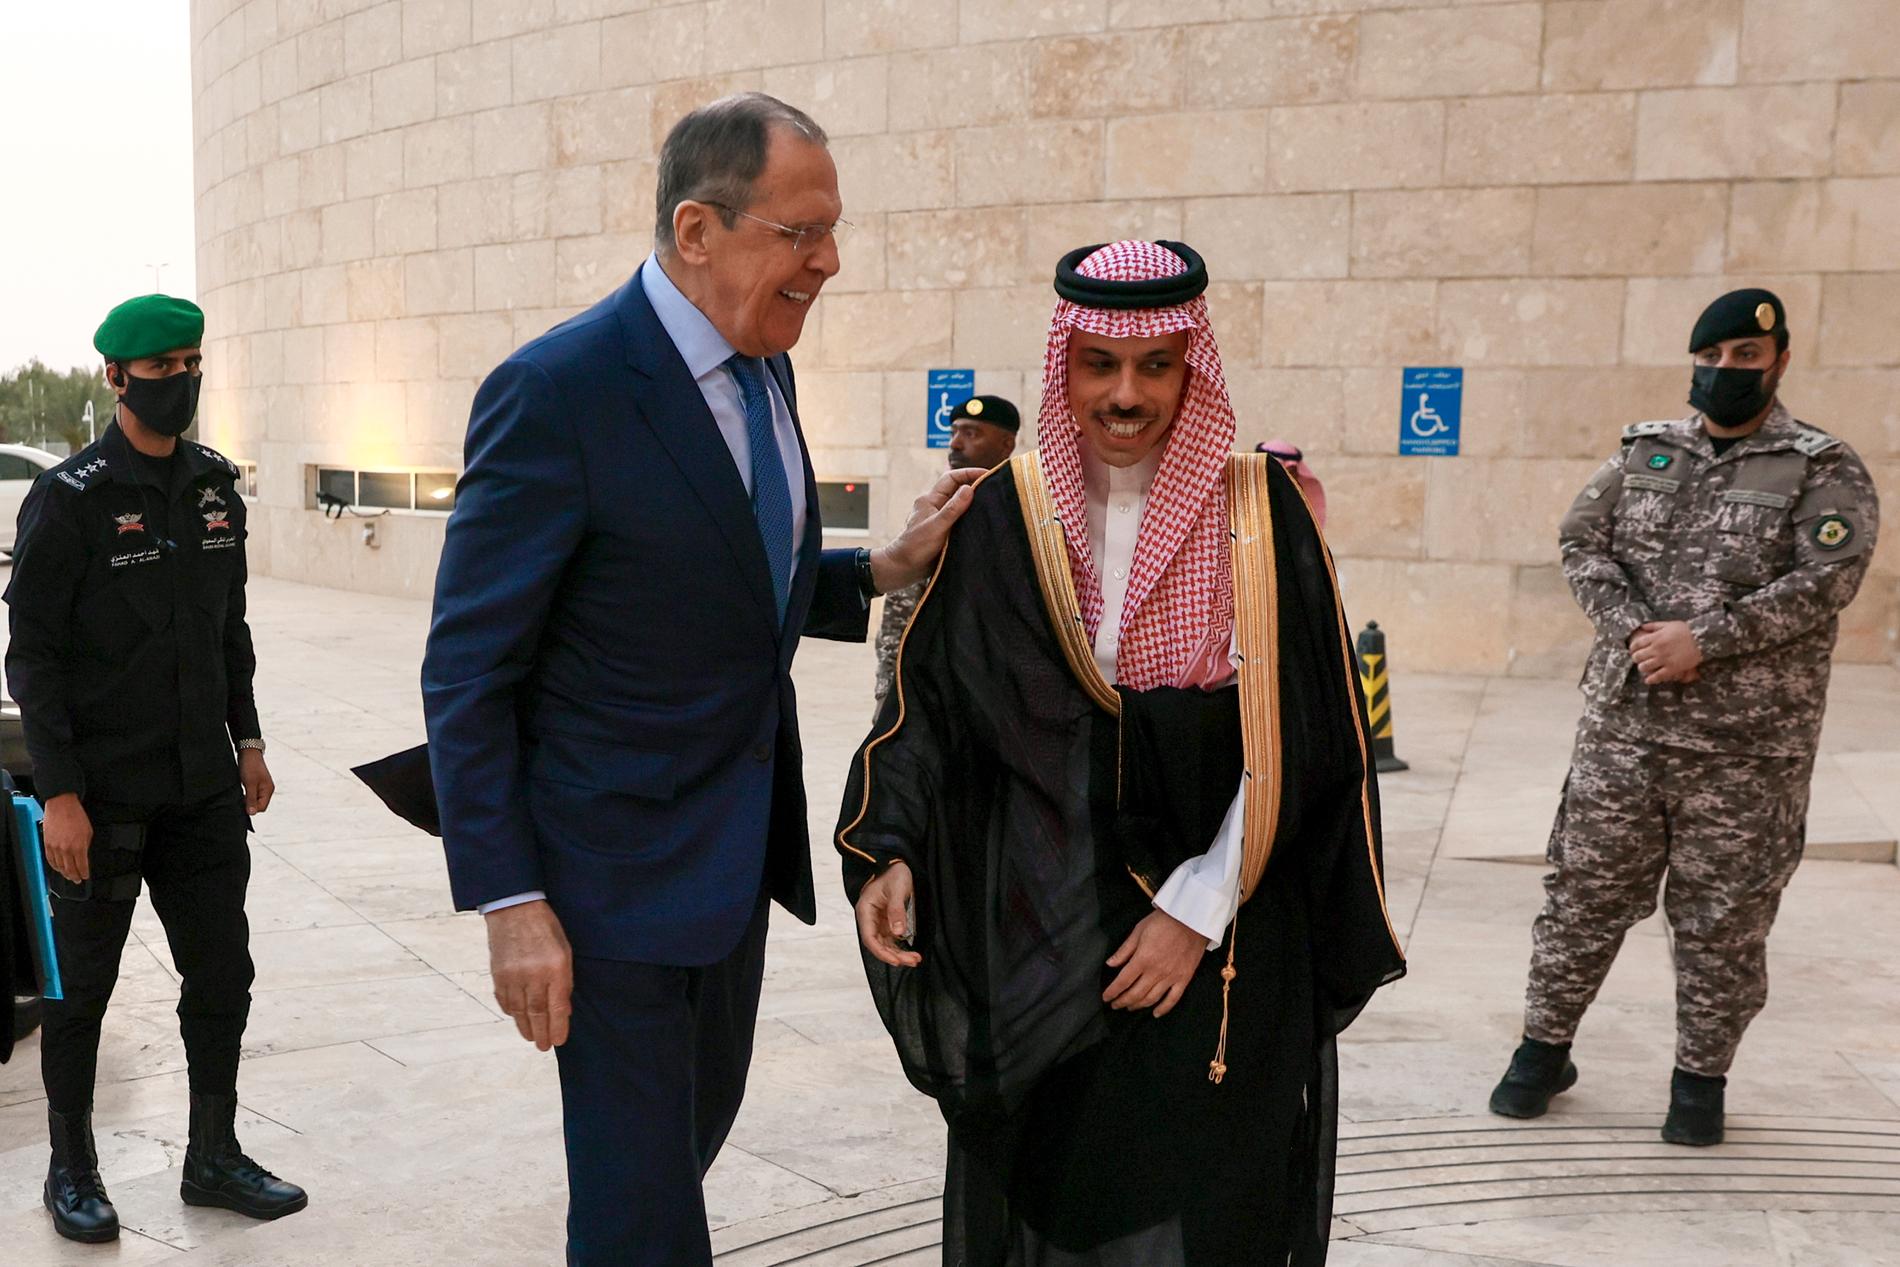 Rysslands utrikesminister Sergej Lavrov är på rundresa bland oljeländer i Mellanöstern och träffade i tisdags den saudiske prinsen Faisal bin Farhan.